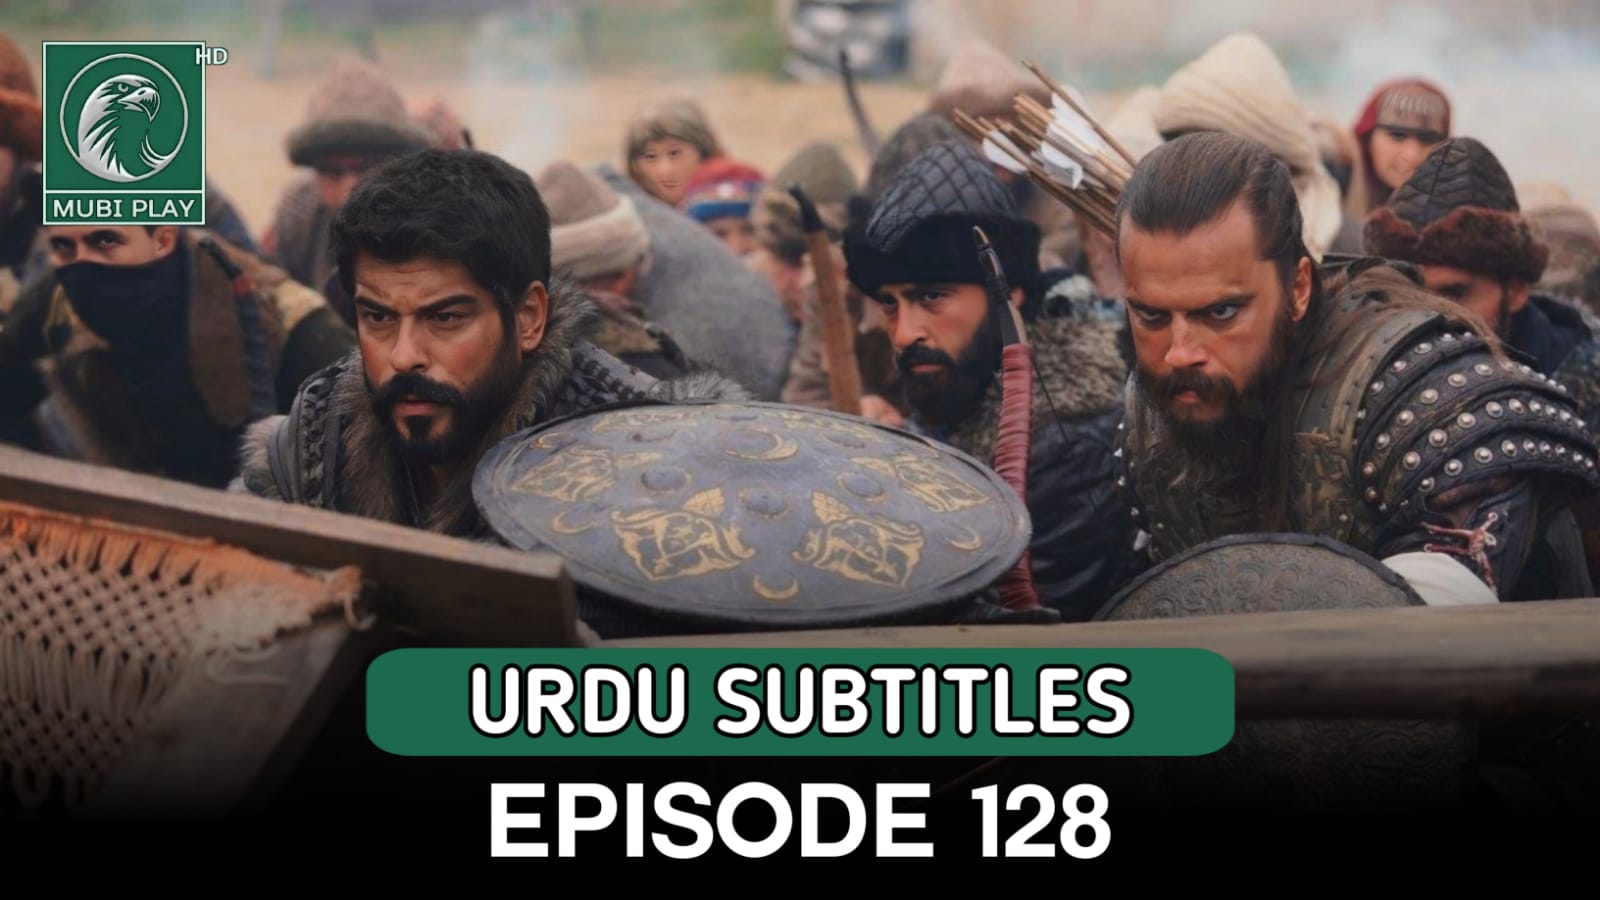 Kurulus Osman Episode 128 Urdu and English Subtitles by MubiPlay